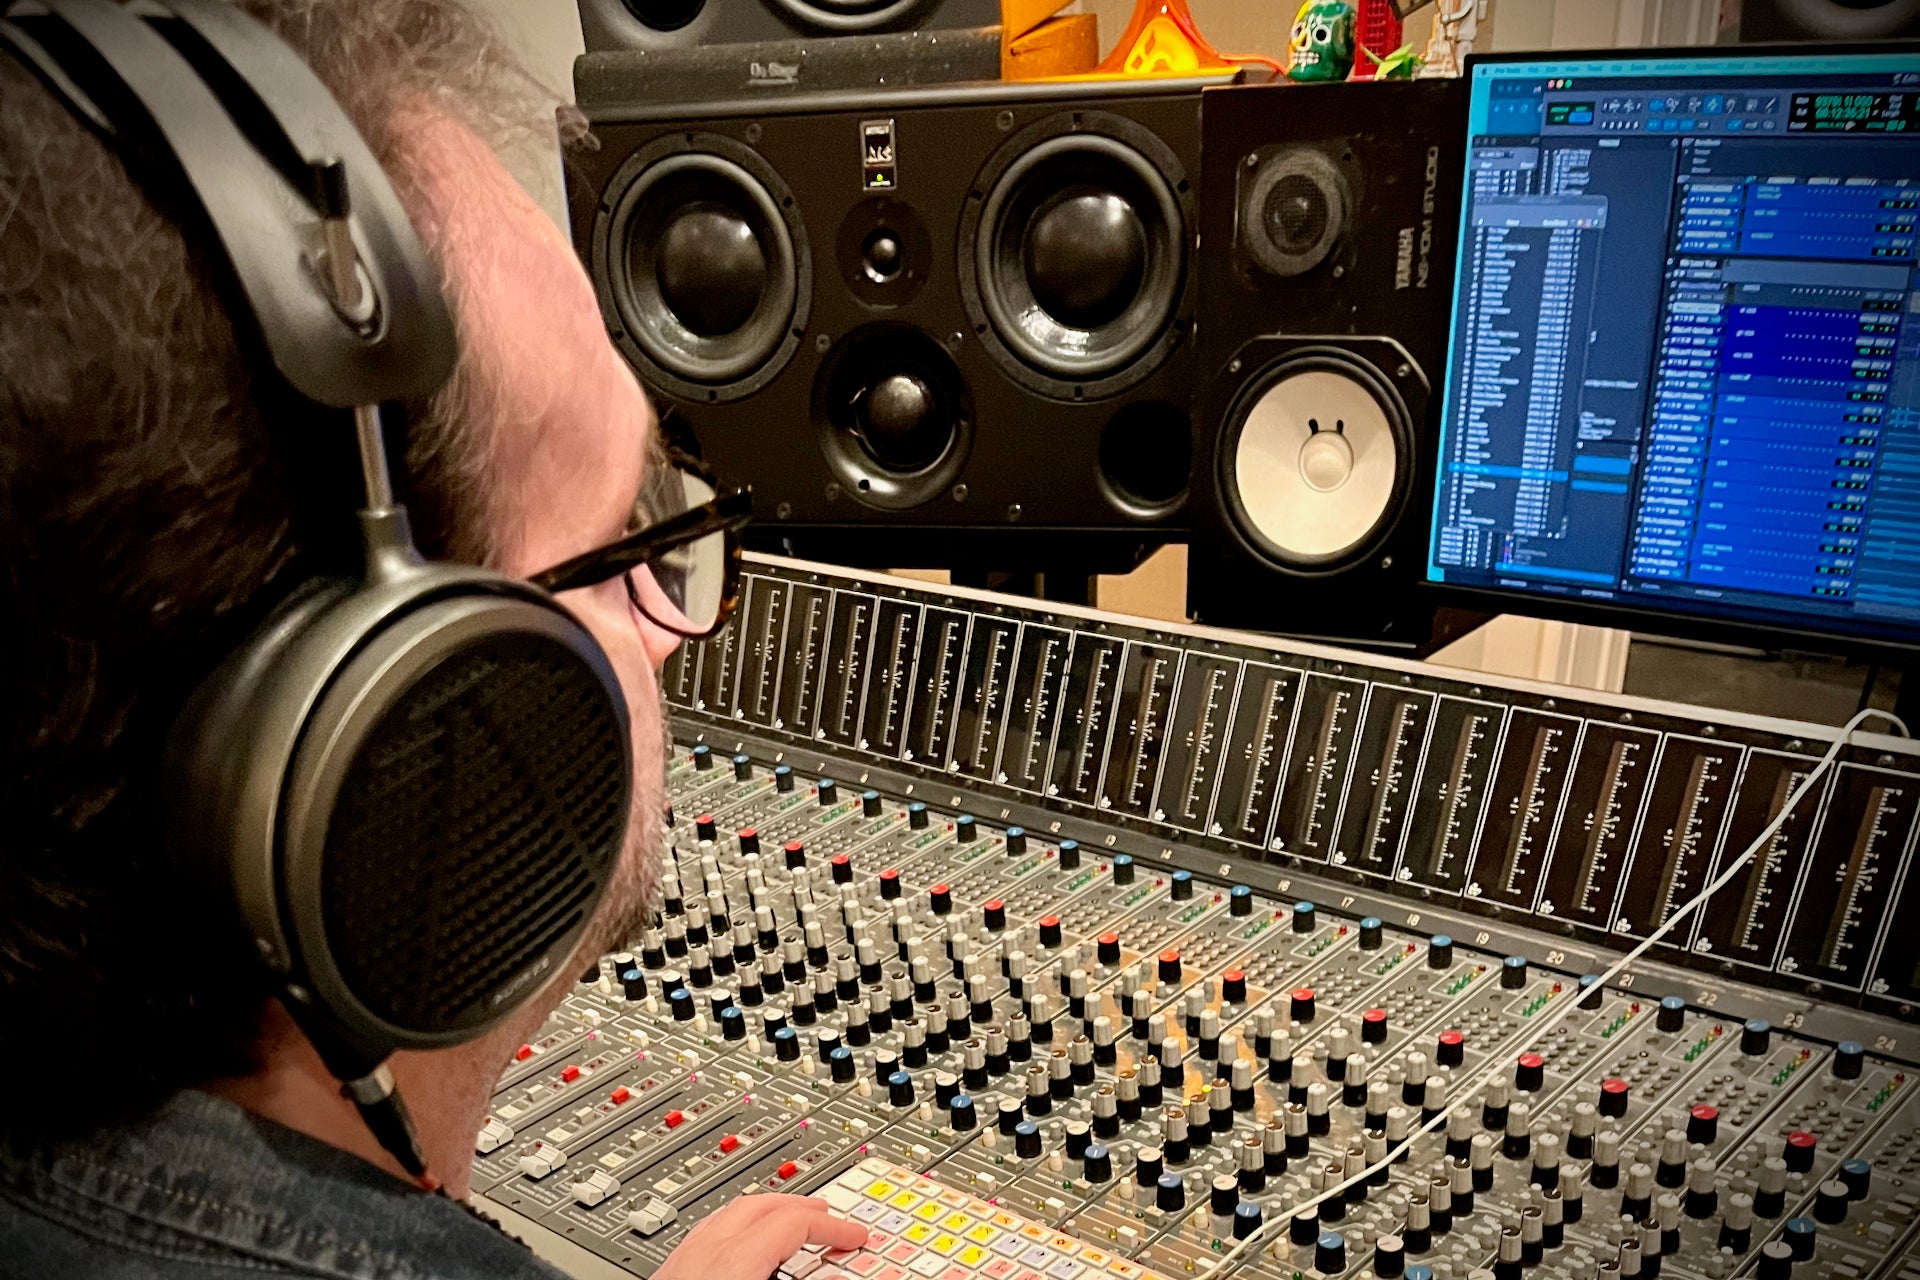 Abel Garibaldi in the studio with his Audeze MM-500 headphones